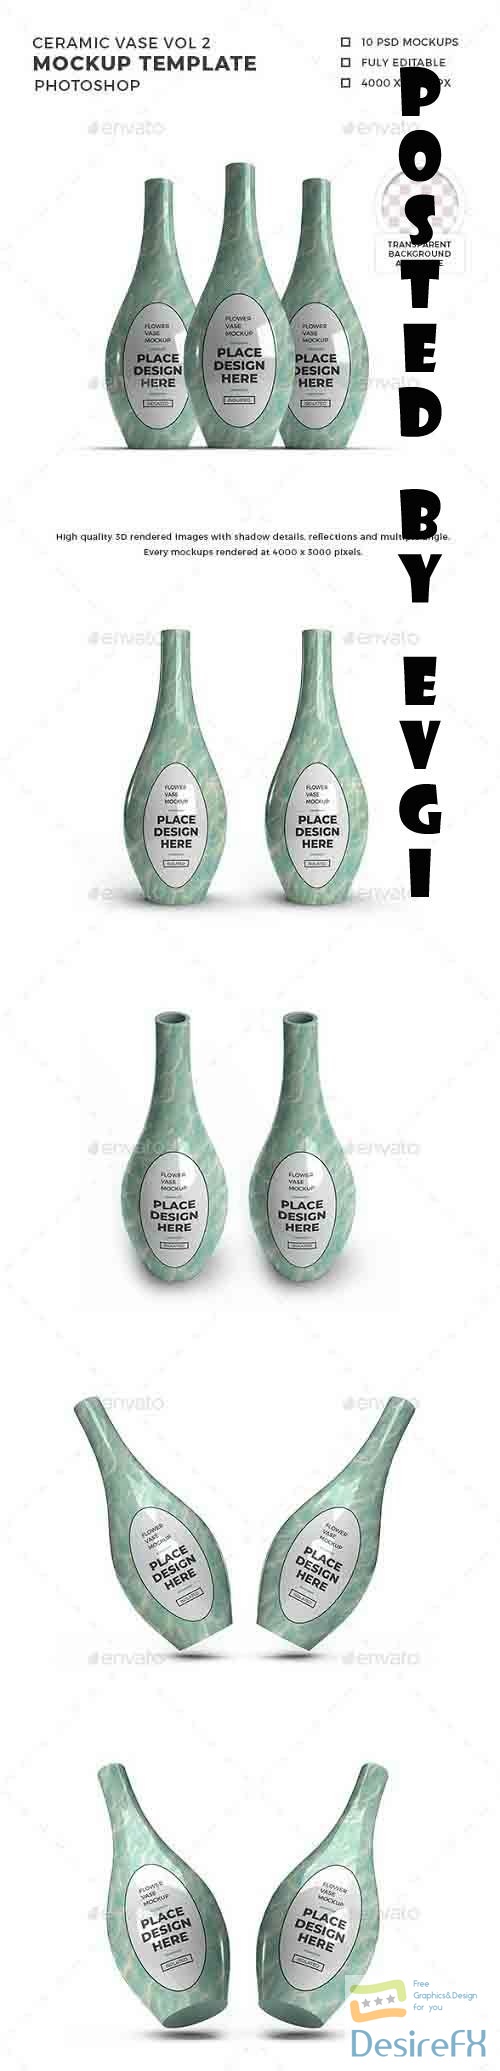 Ceramic Vase 3D Mockup Template Vol 2 - 32458681